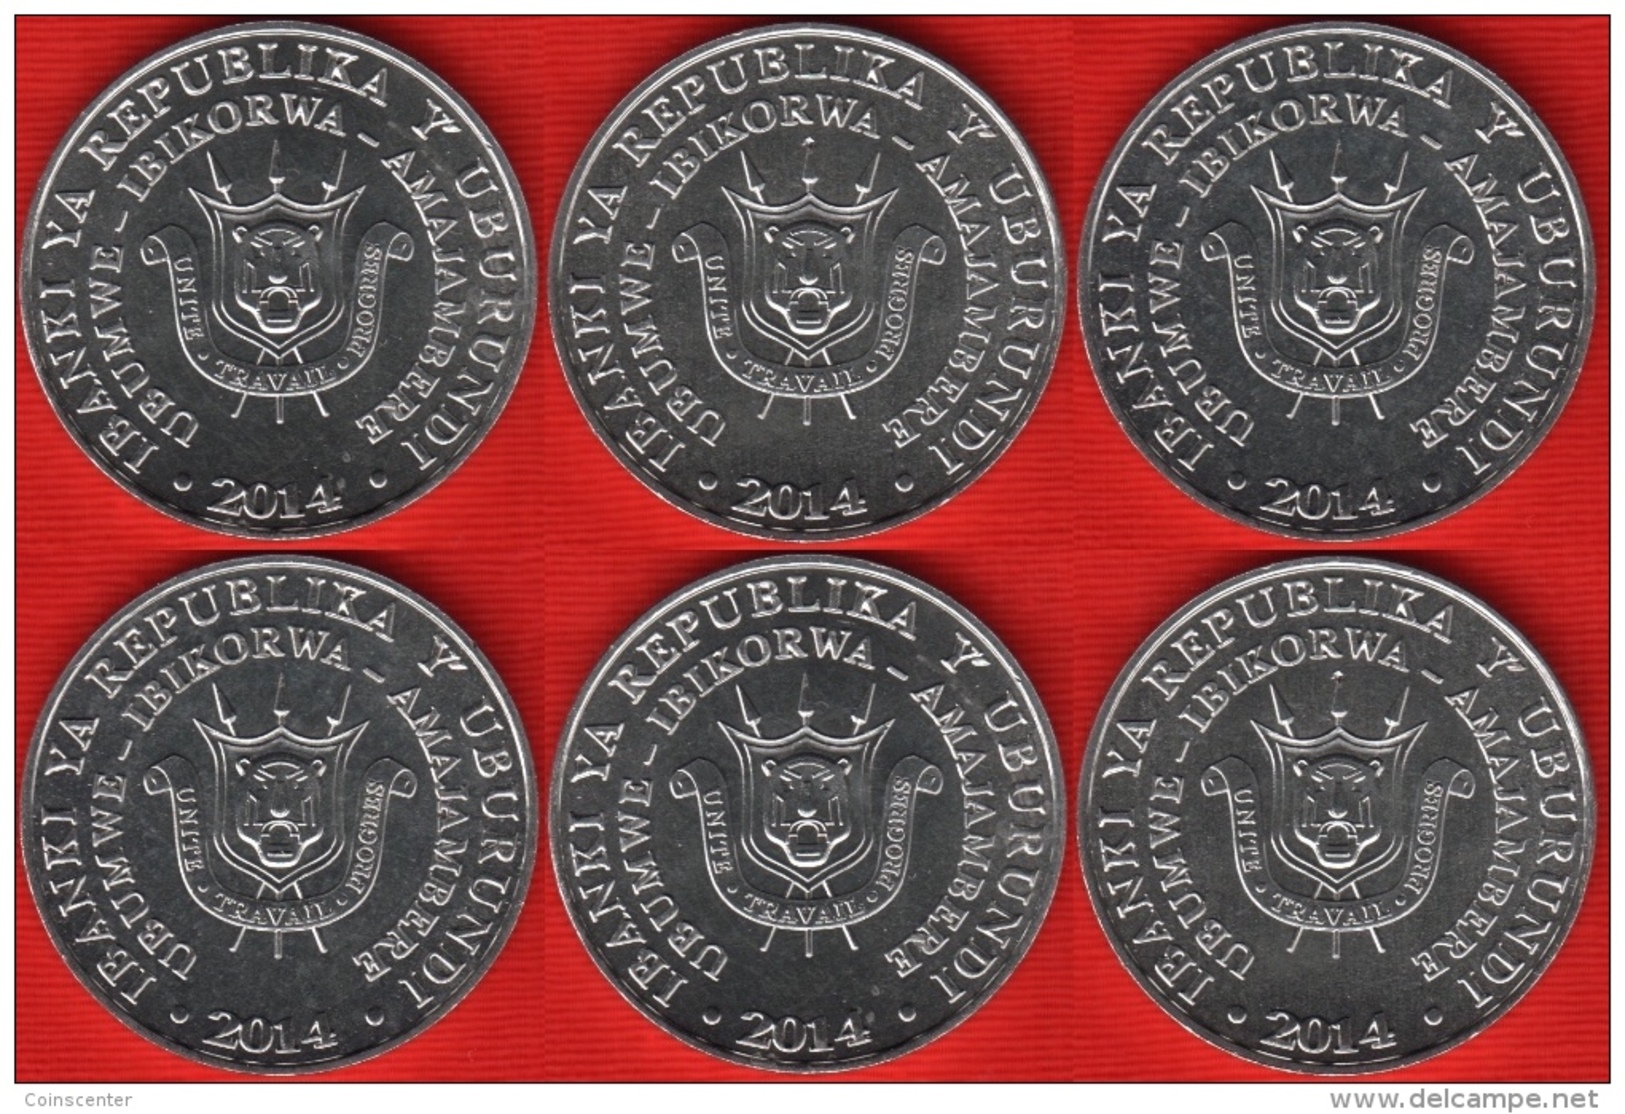 WHOLESALE 10 Sets: Burundi Set Of 6 Coins: 5 Francs 2014 "Birds" UNC - Burundi